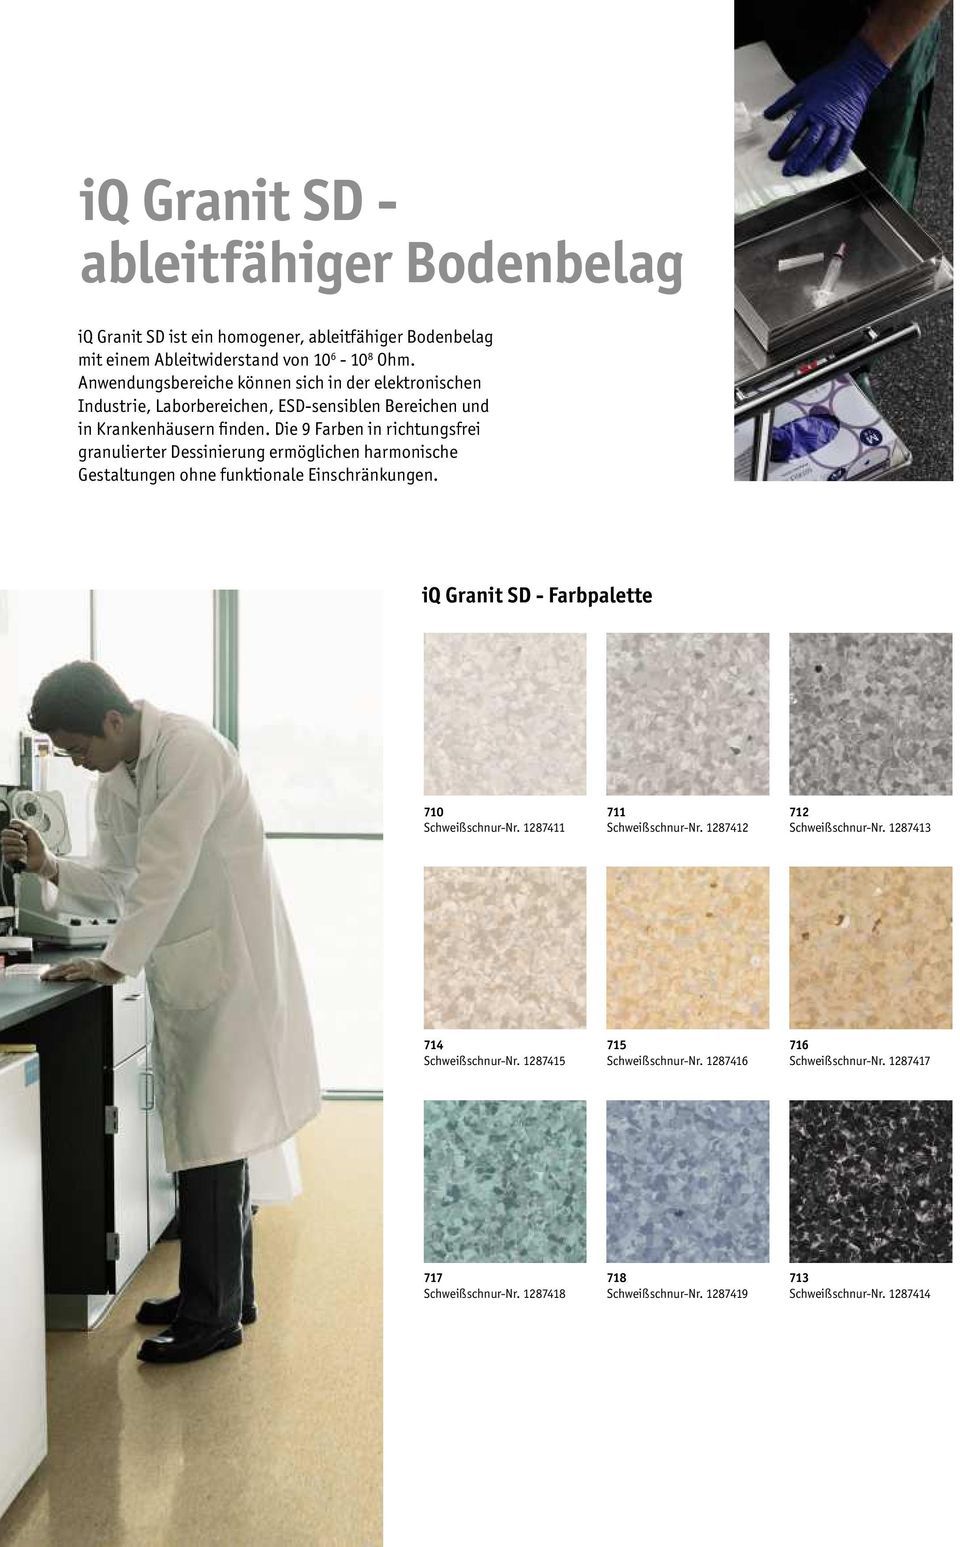 Die 9 Farben in richtungsfrei granulierter Dessinierung ermöglichen harmonische Gestaltungen ohne funktionale Einschränkungen. iq Granit SD - Farbpalette 710 Schweißschnur-Nr.